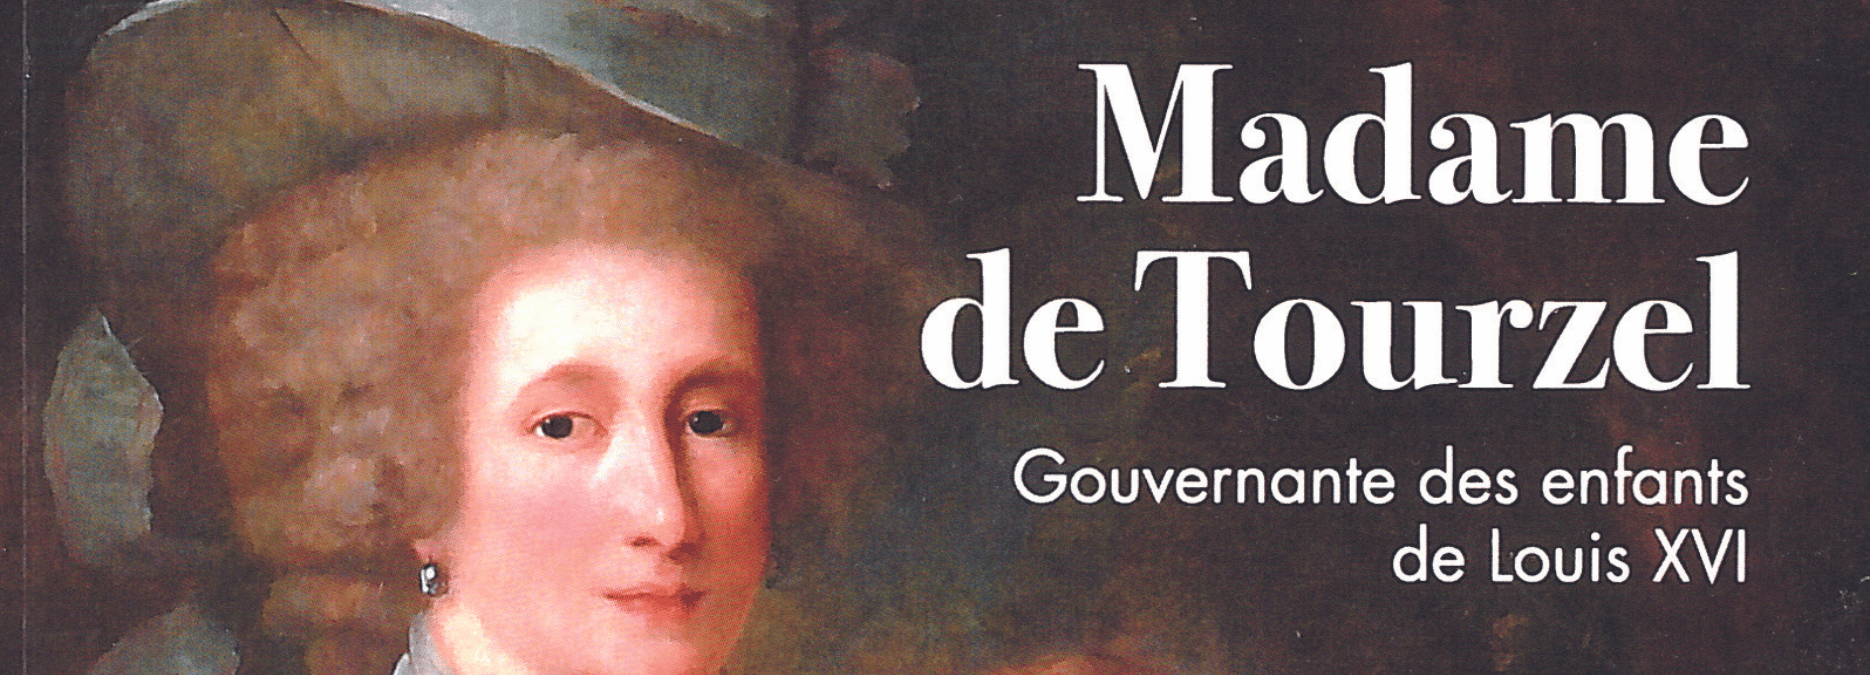 Madame de Tourzel, une figure oubliée de la tragédie révolutionnaire – Entretien avec Jacques Bernot